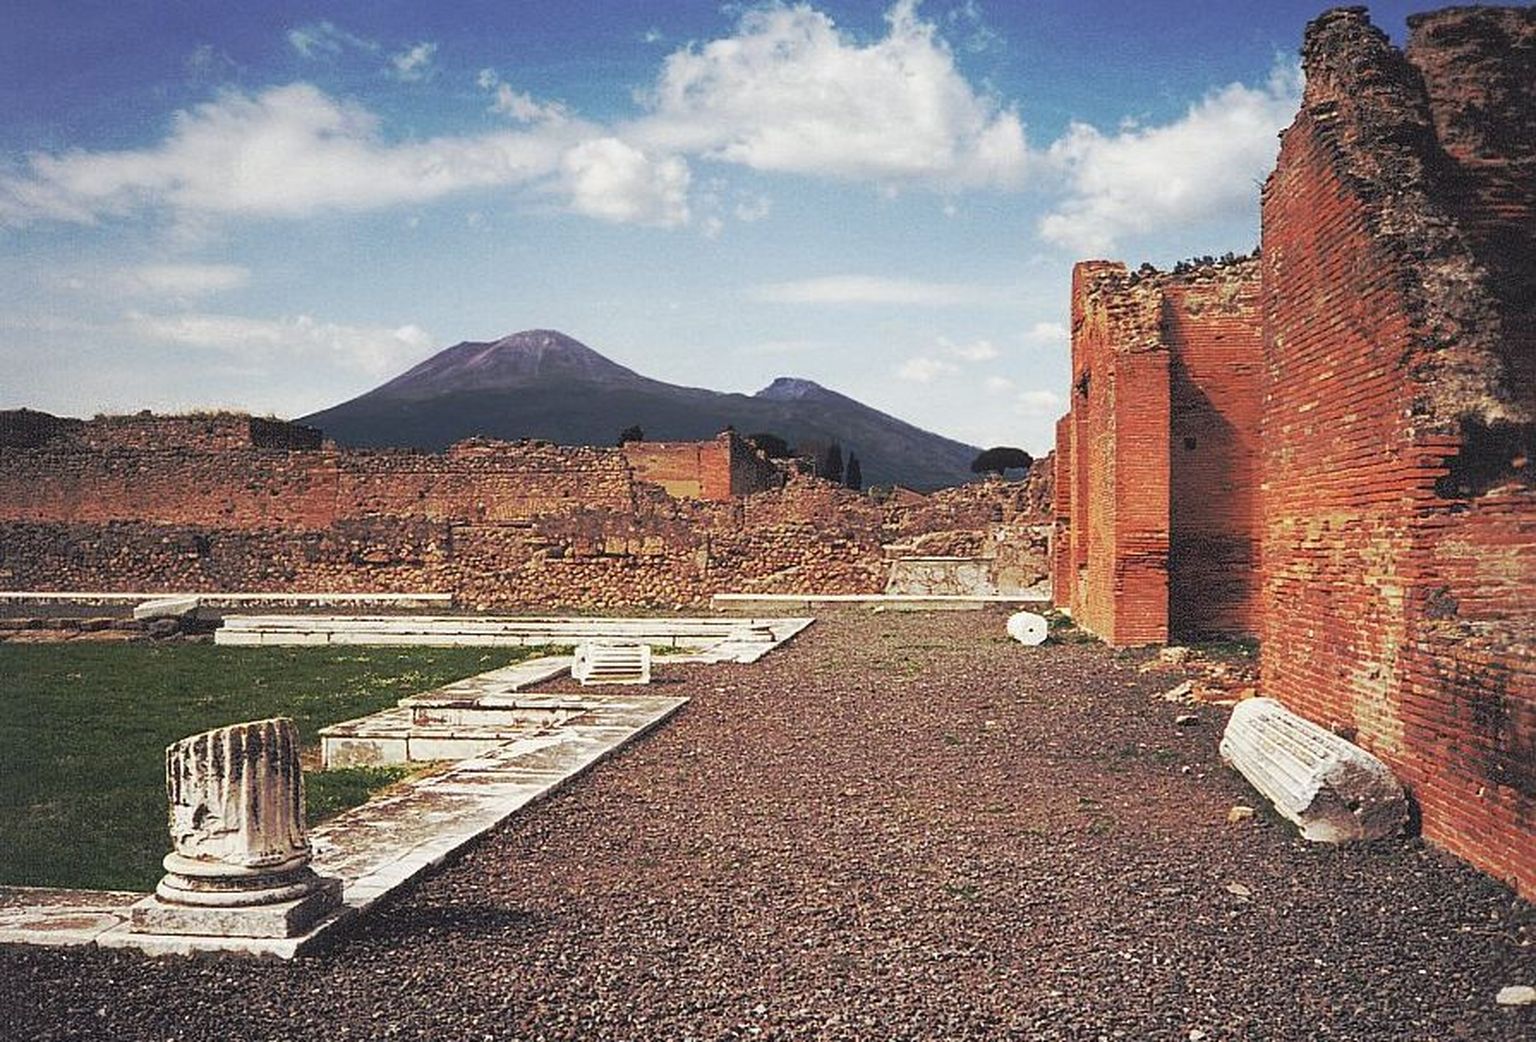 Vaade Vesuuvile Pompei varemetest